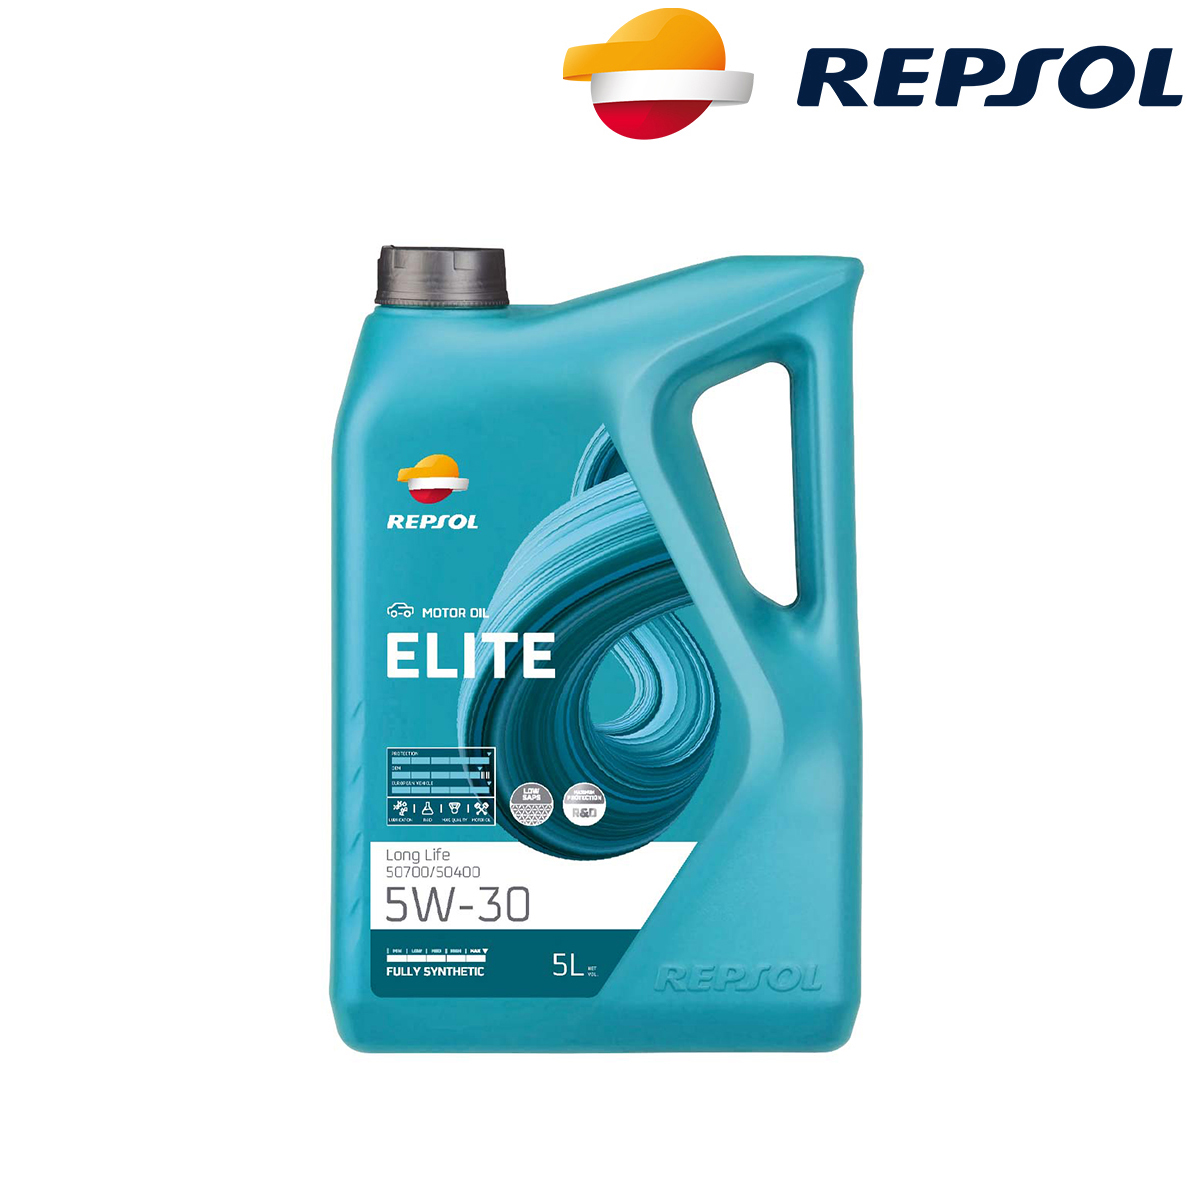 Motorno ulje - ulje za motore Repsol Elite Long Life 50700/50400 5W30 5l RPP0057IFB